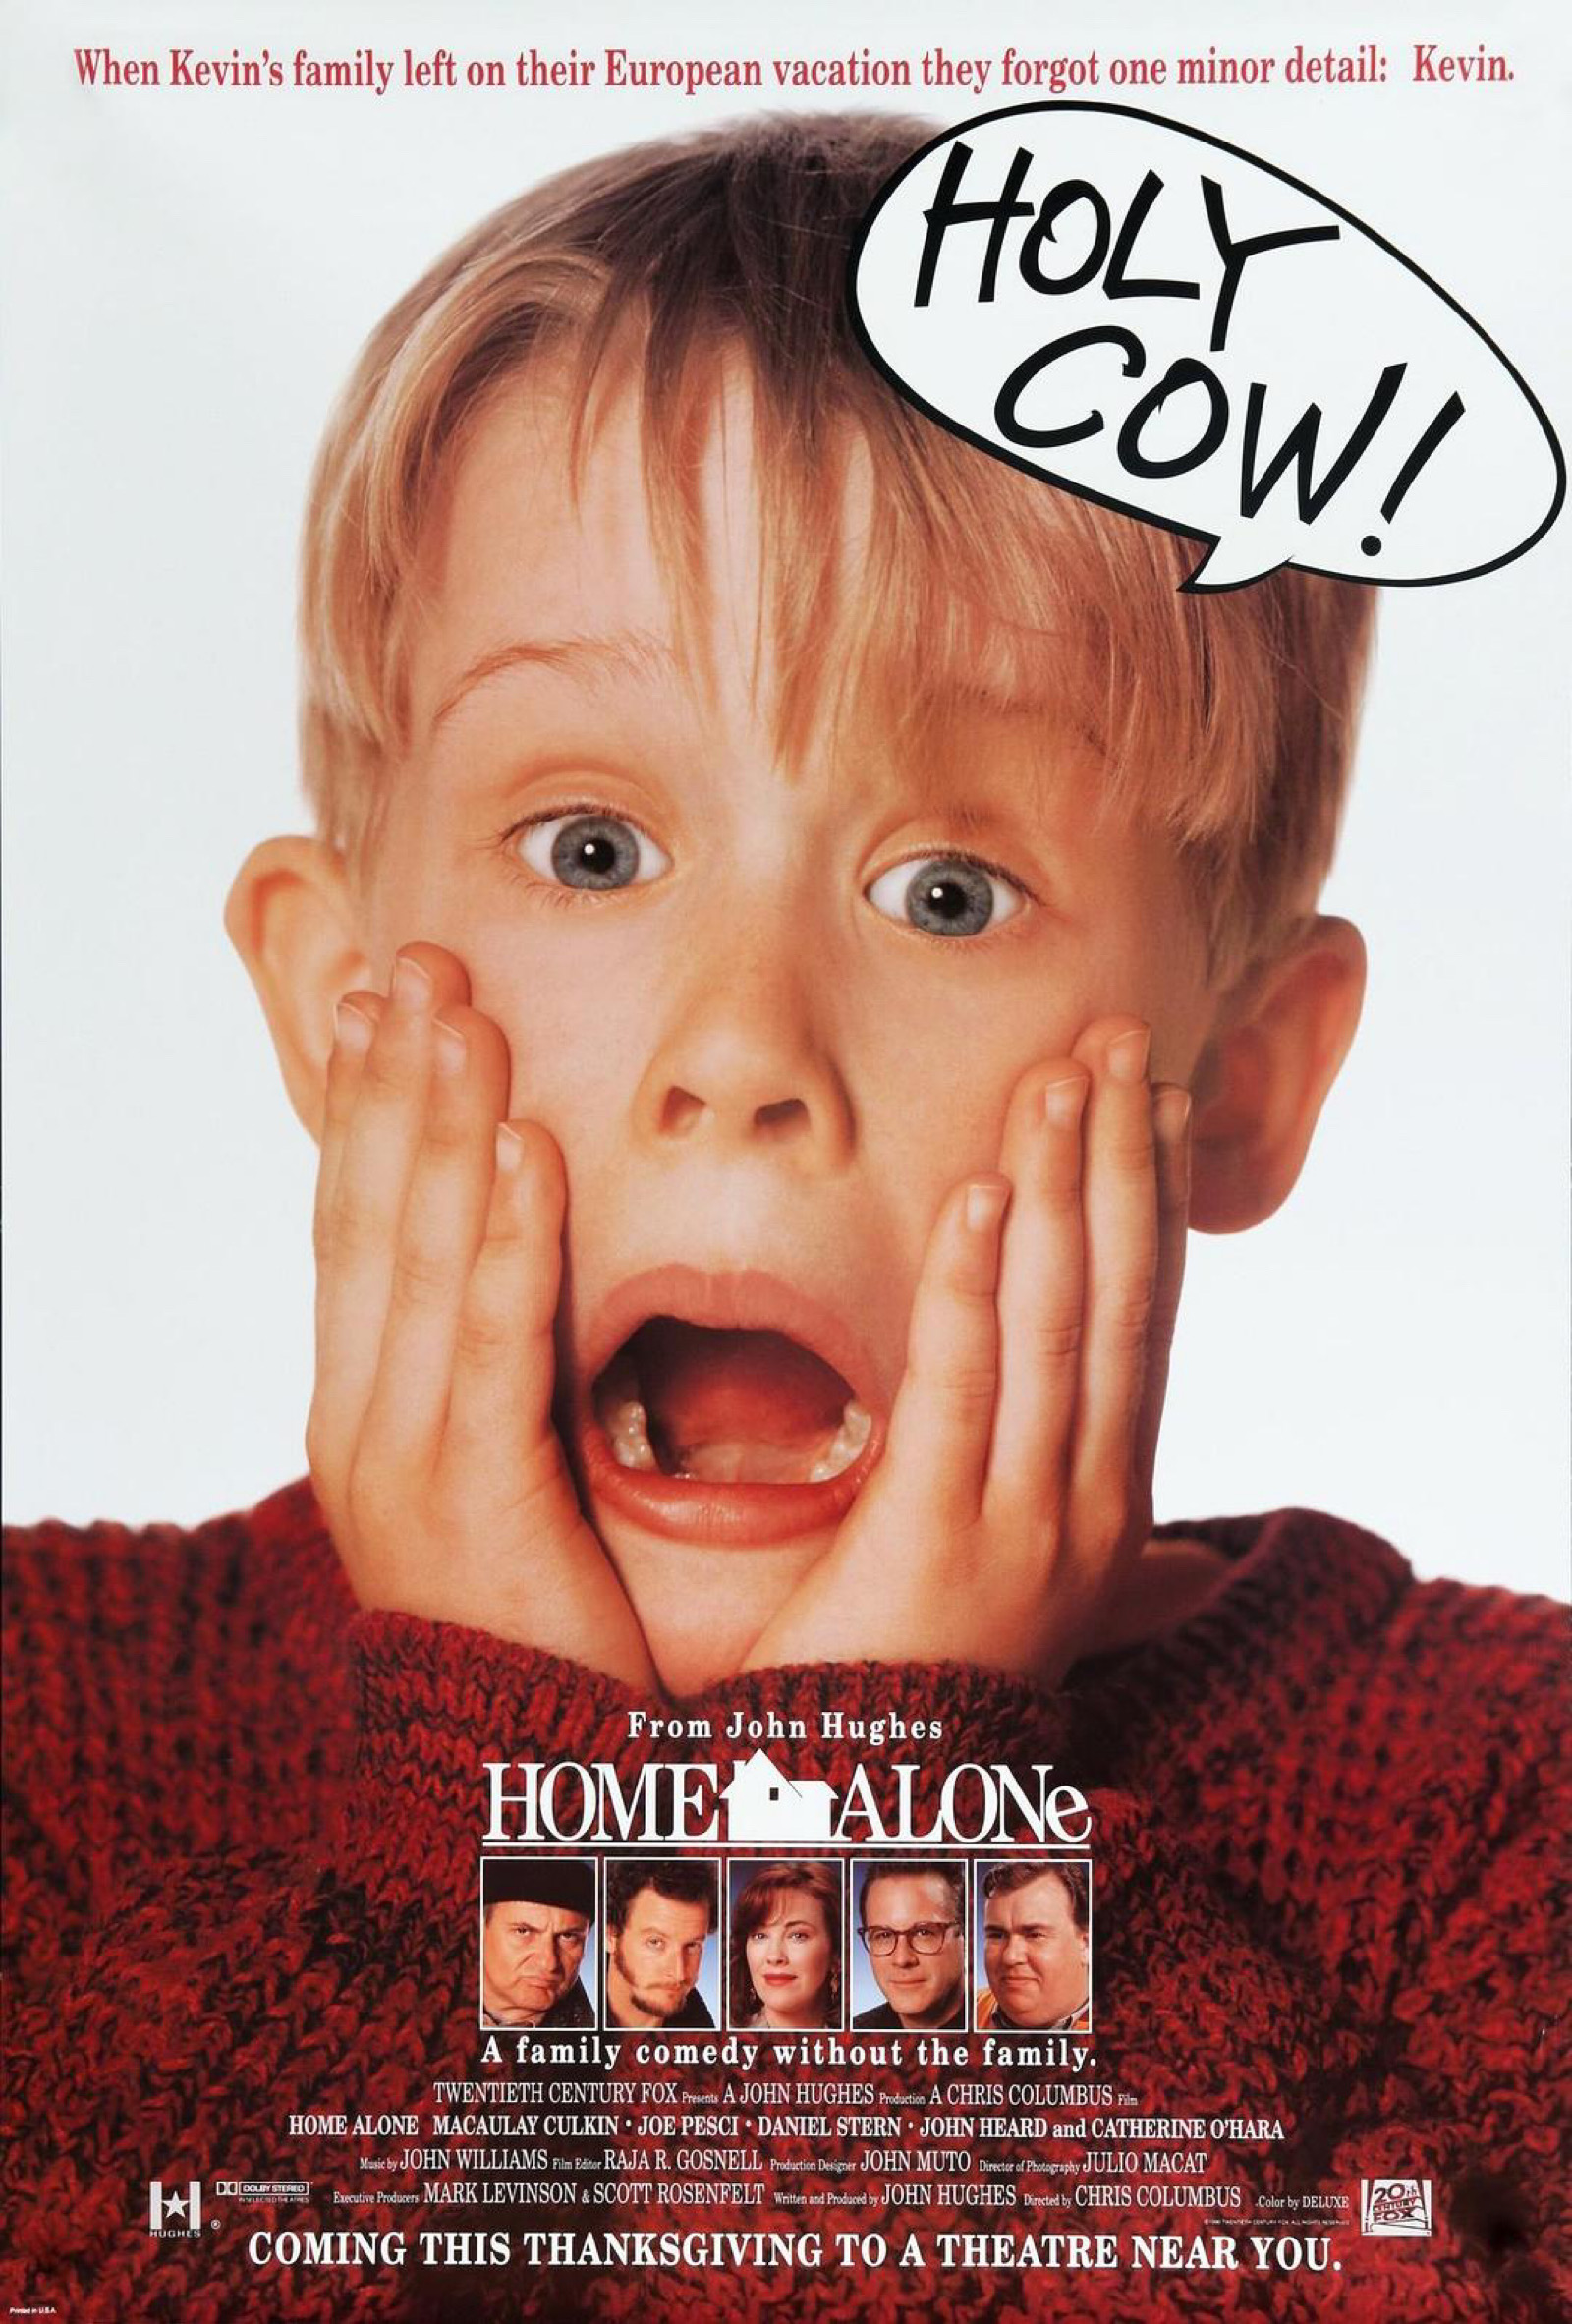 《小鬼当家》(home alone)1990年 美国 是由20世纪福克斯电影公司制作